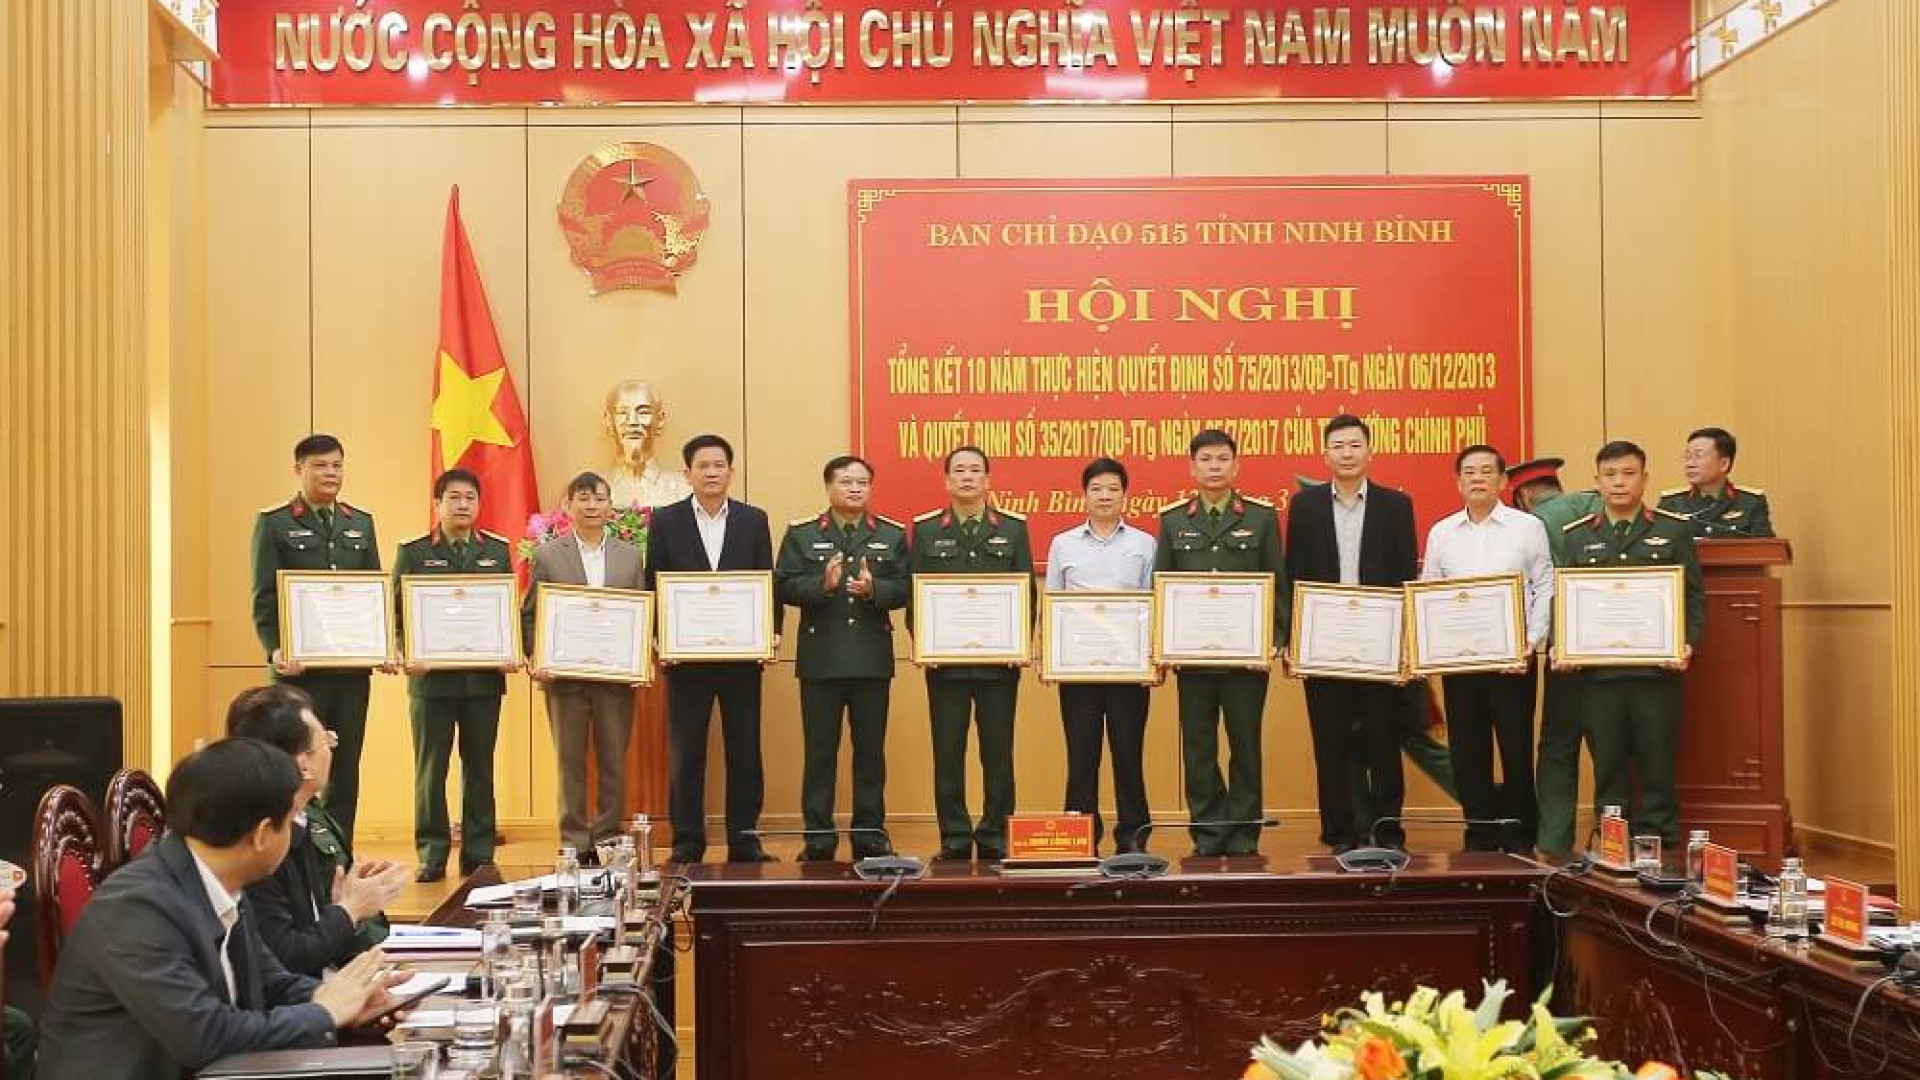 Ban chỉ đạo 515 tỉnh Ninh Bình tổng kết 10 năm thực hiện nhiệm vụ tìm kiếm, quy tập hài cốt liệt sĩ